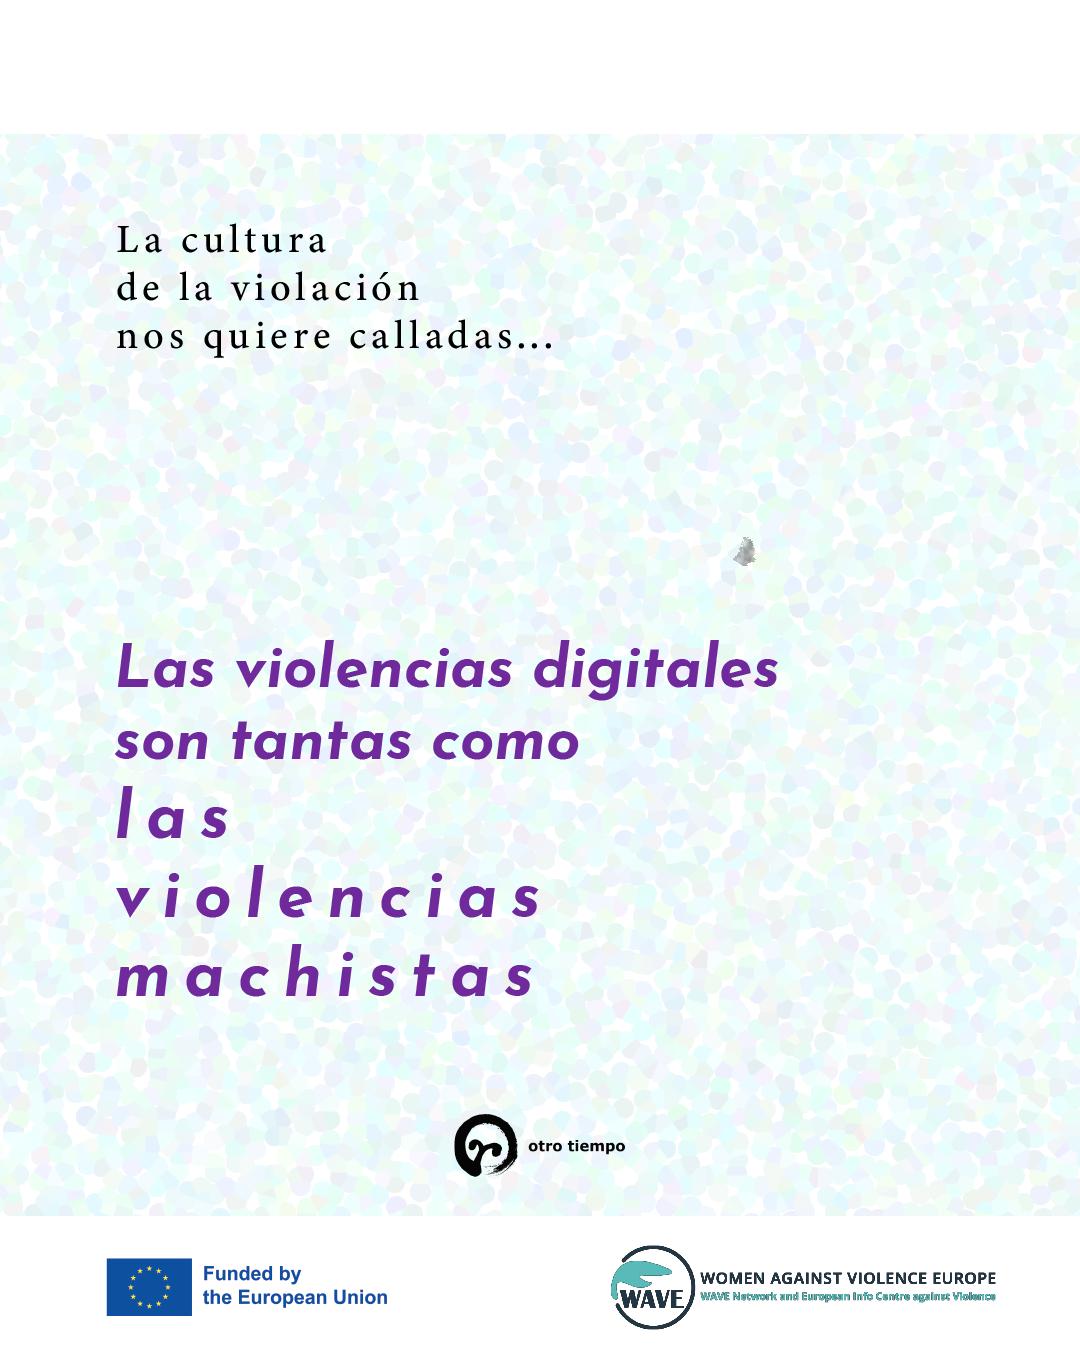 Imagen campaña Juntas combatimos violencias machistas de otro tiempo feminista 2022.